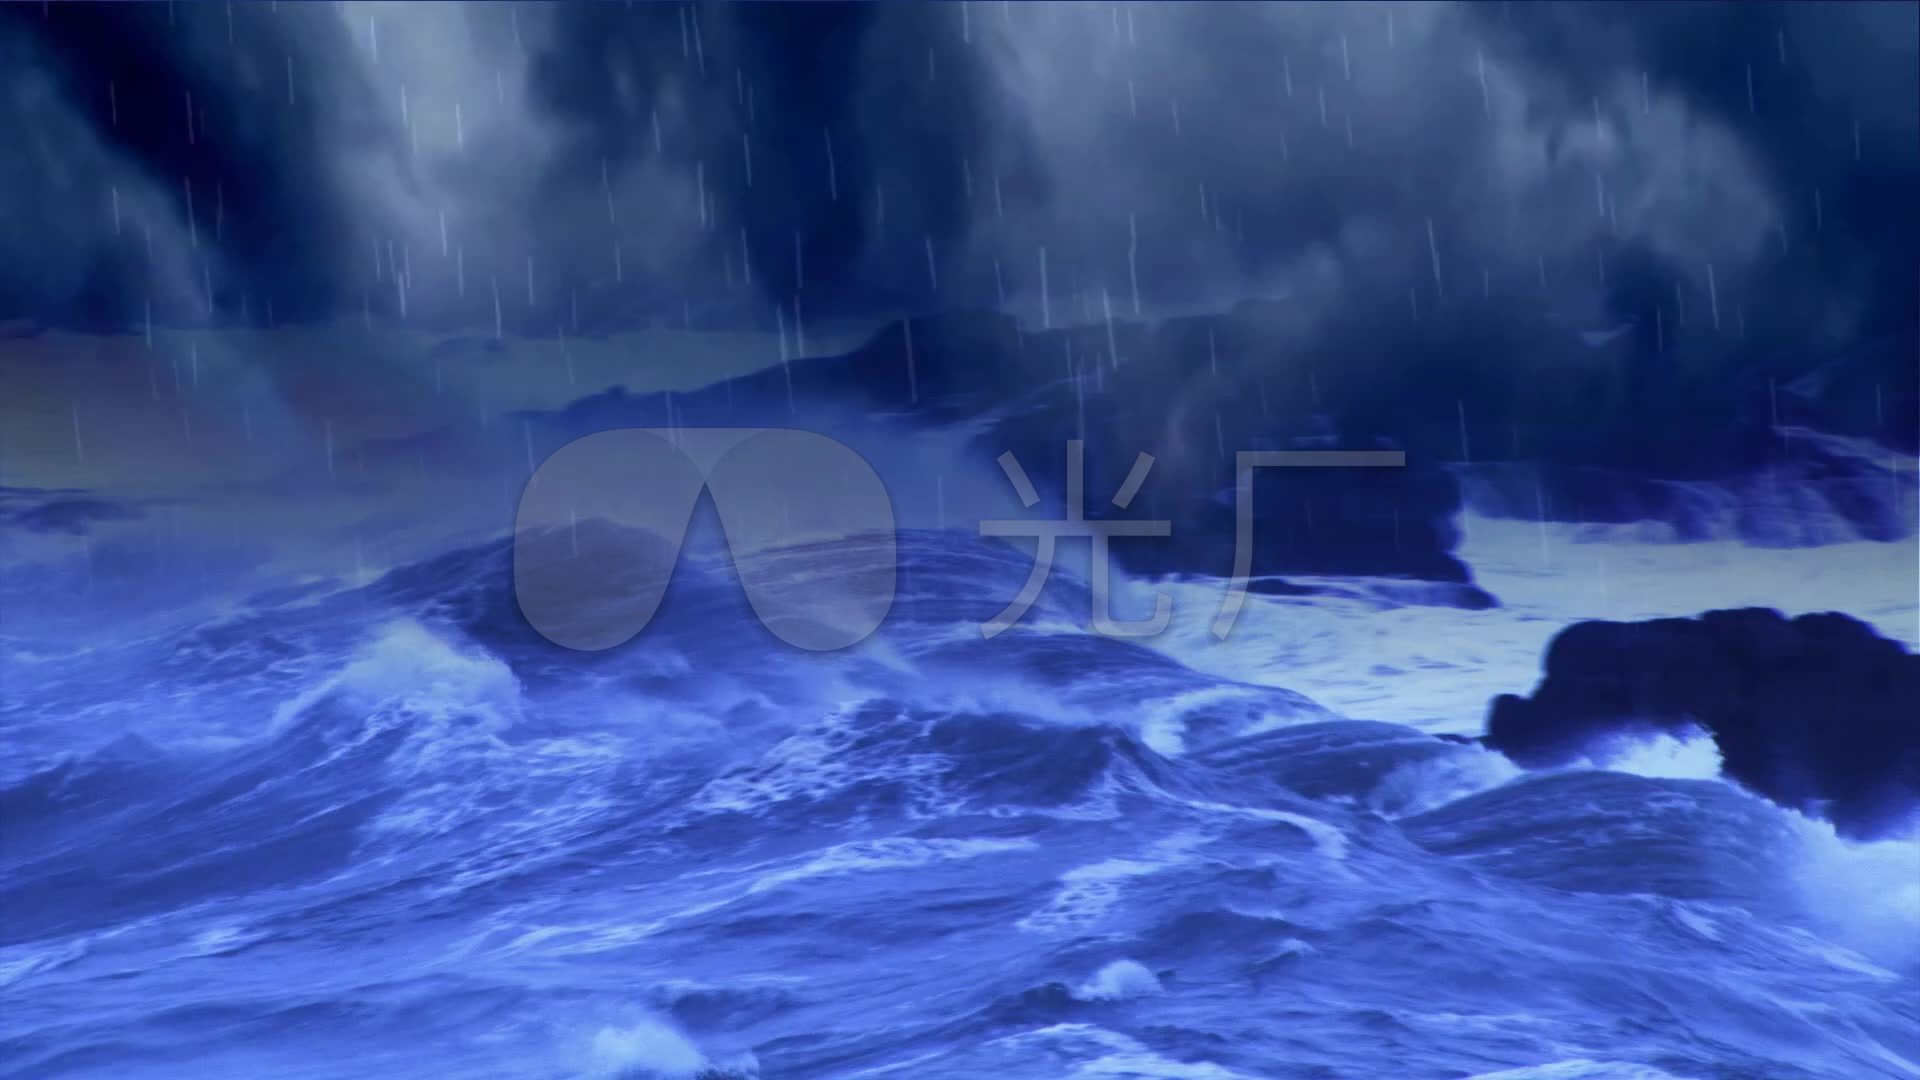 海上风暴海上暴风雨视频素材,其它视频素材下载,高清2560X1440视频素材下载,凌点视频素材网,编号:126988